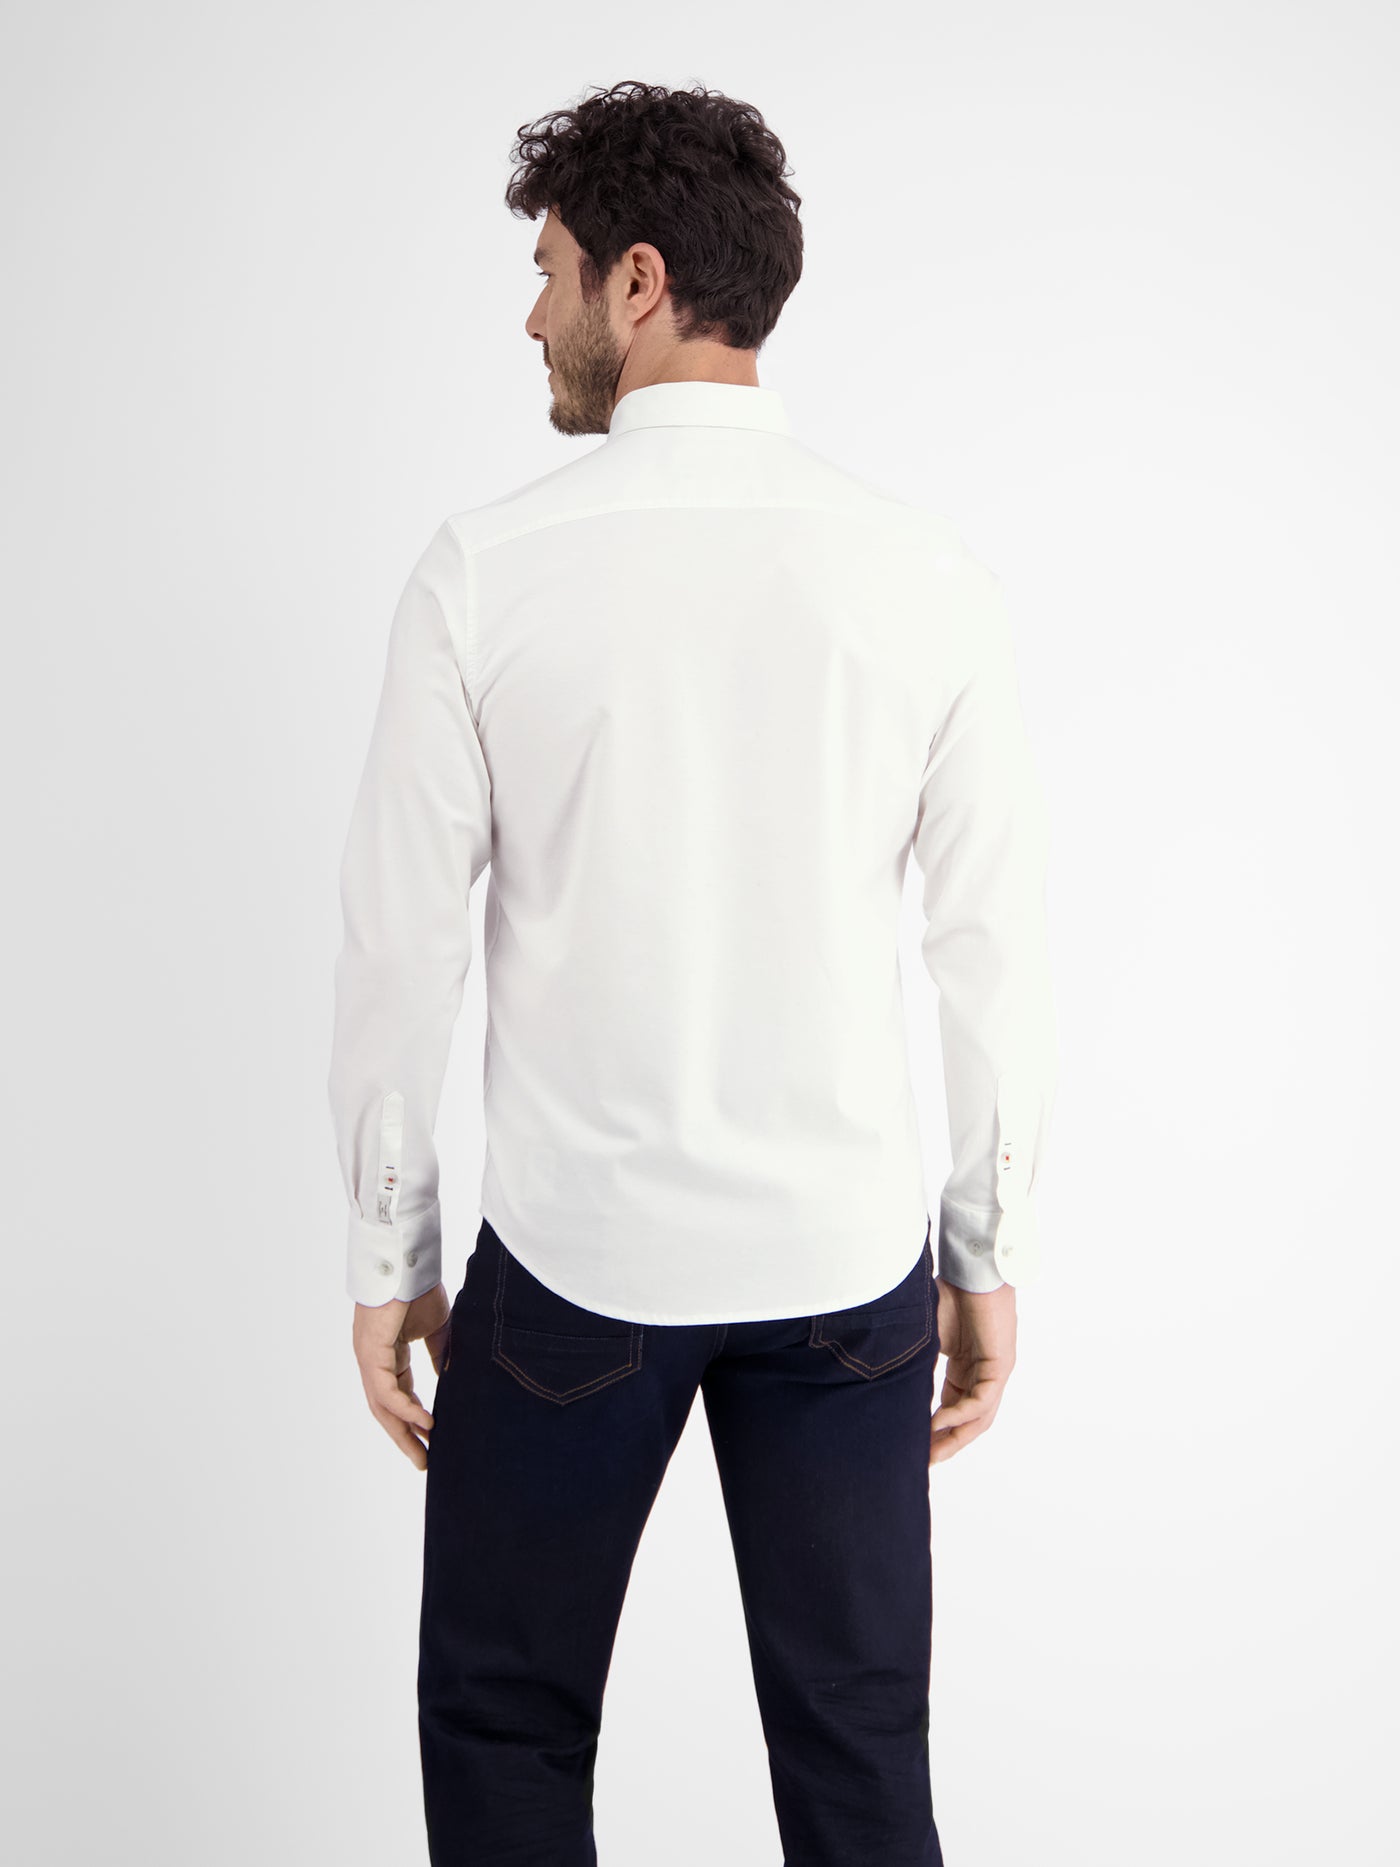 Oxford shirt, plain color